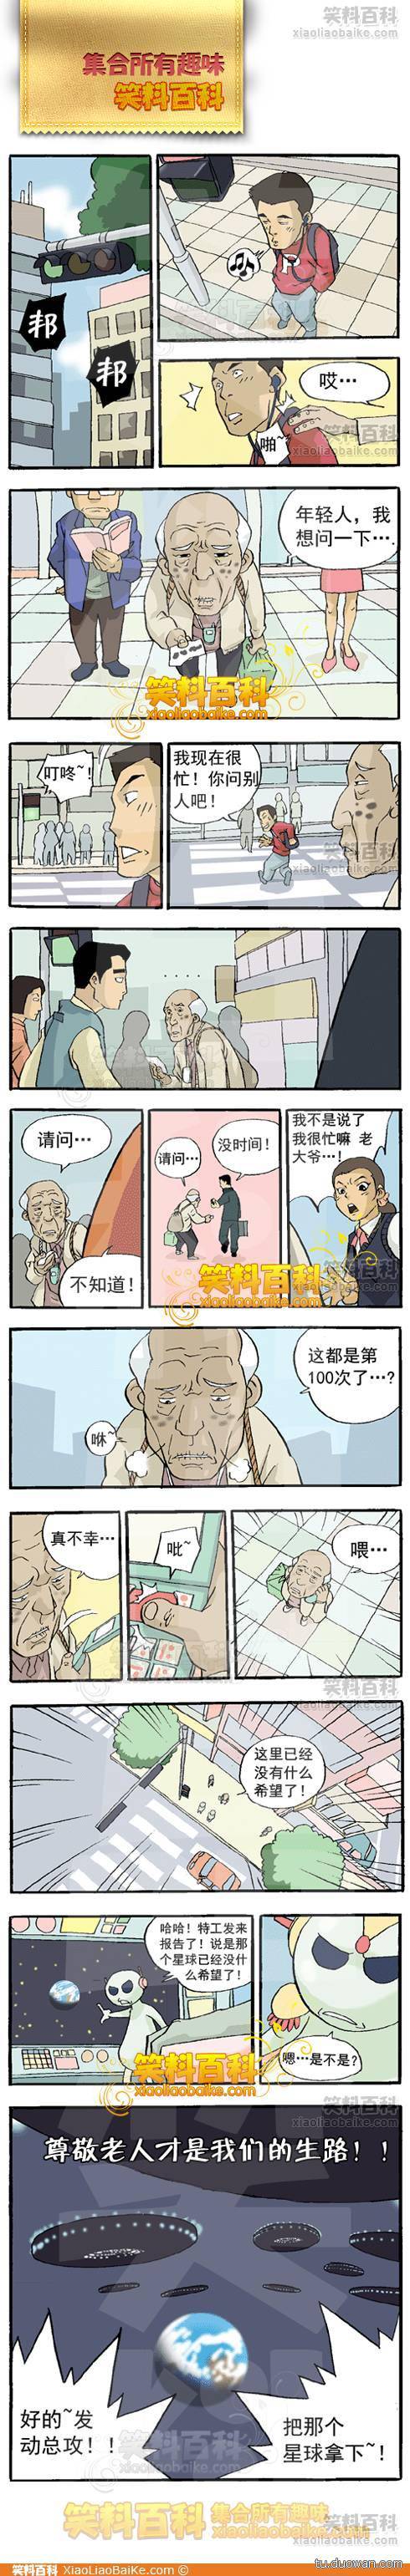 邪恶漫画爆笑囧图第79刊：别想太多